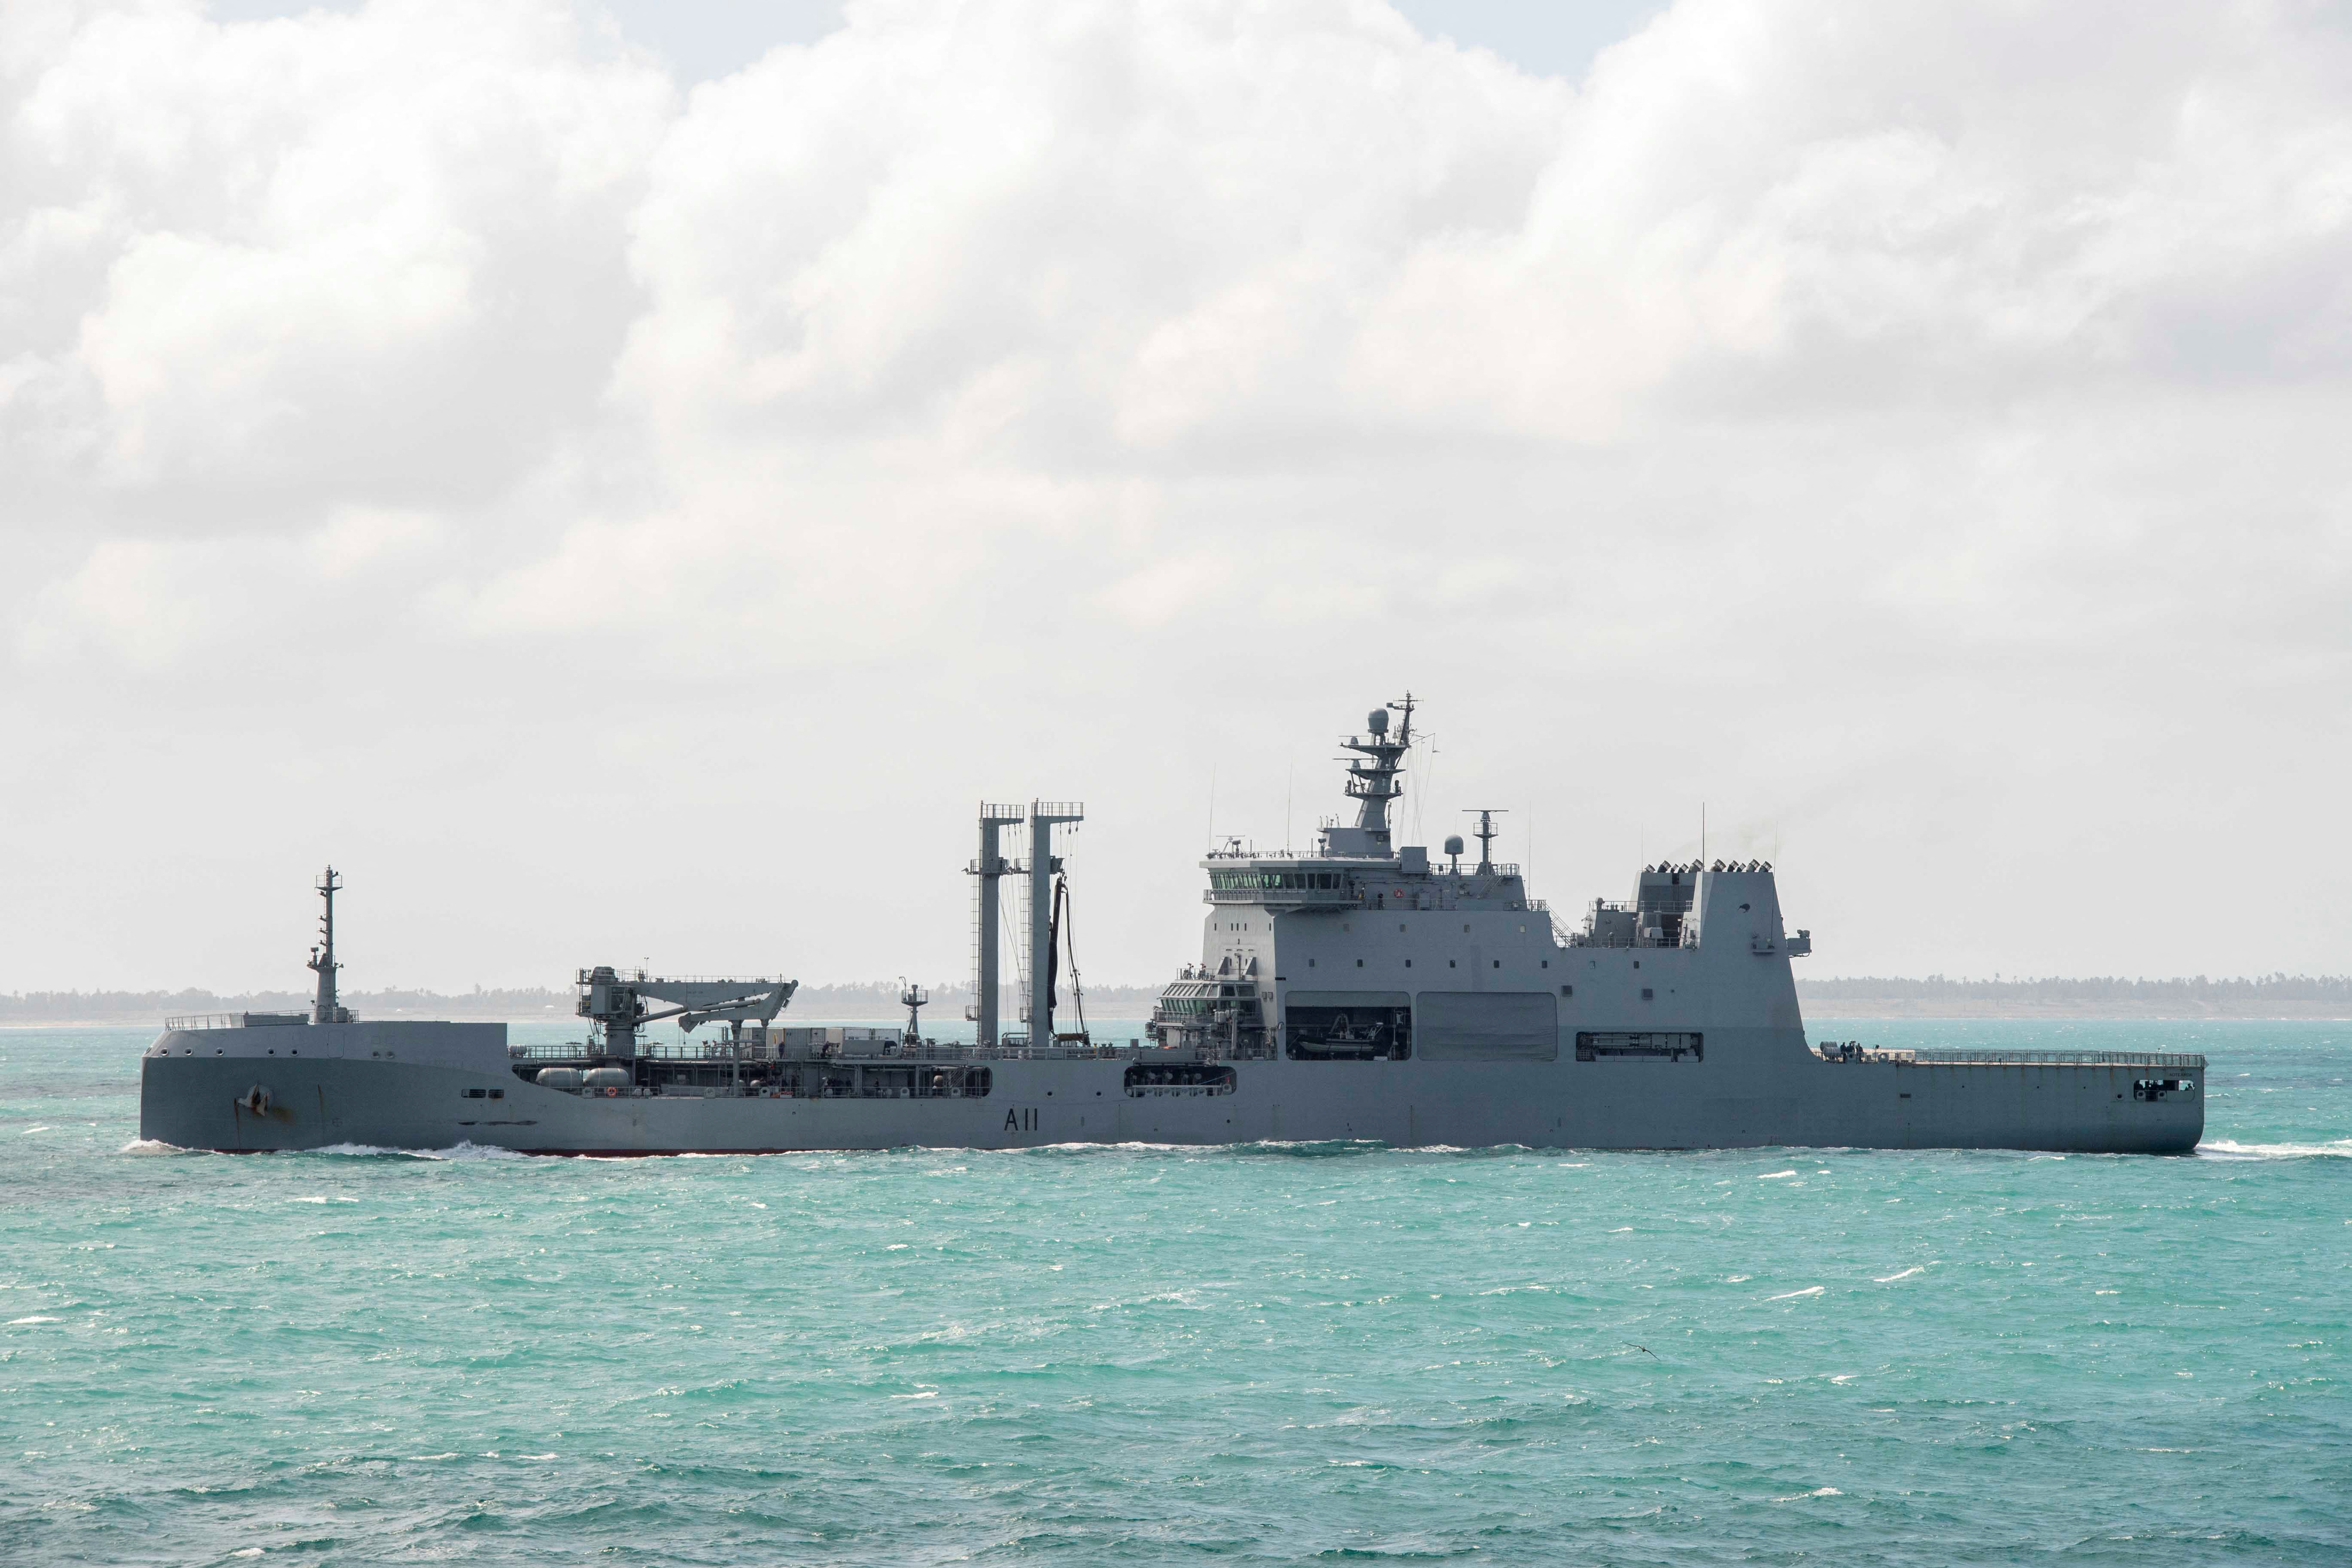 El HMNZS Aotearoa de la Marina Real de Nueva Zelanda navega en el mar frente a la costa de Tonga, el 21 de enero de 2022. Fuerza de Defensa de Nueva Zelanda/Handout via REUTERS